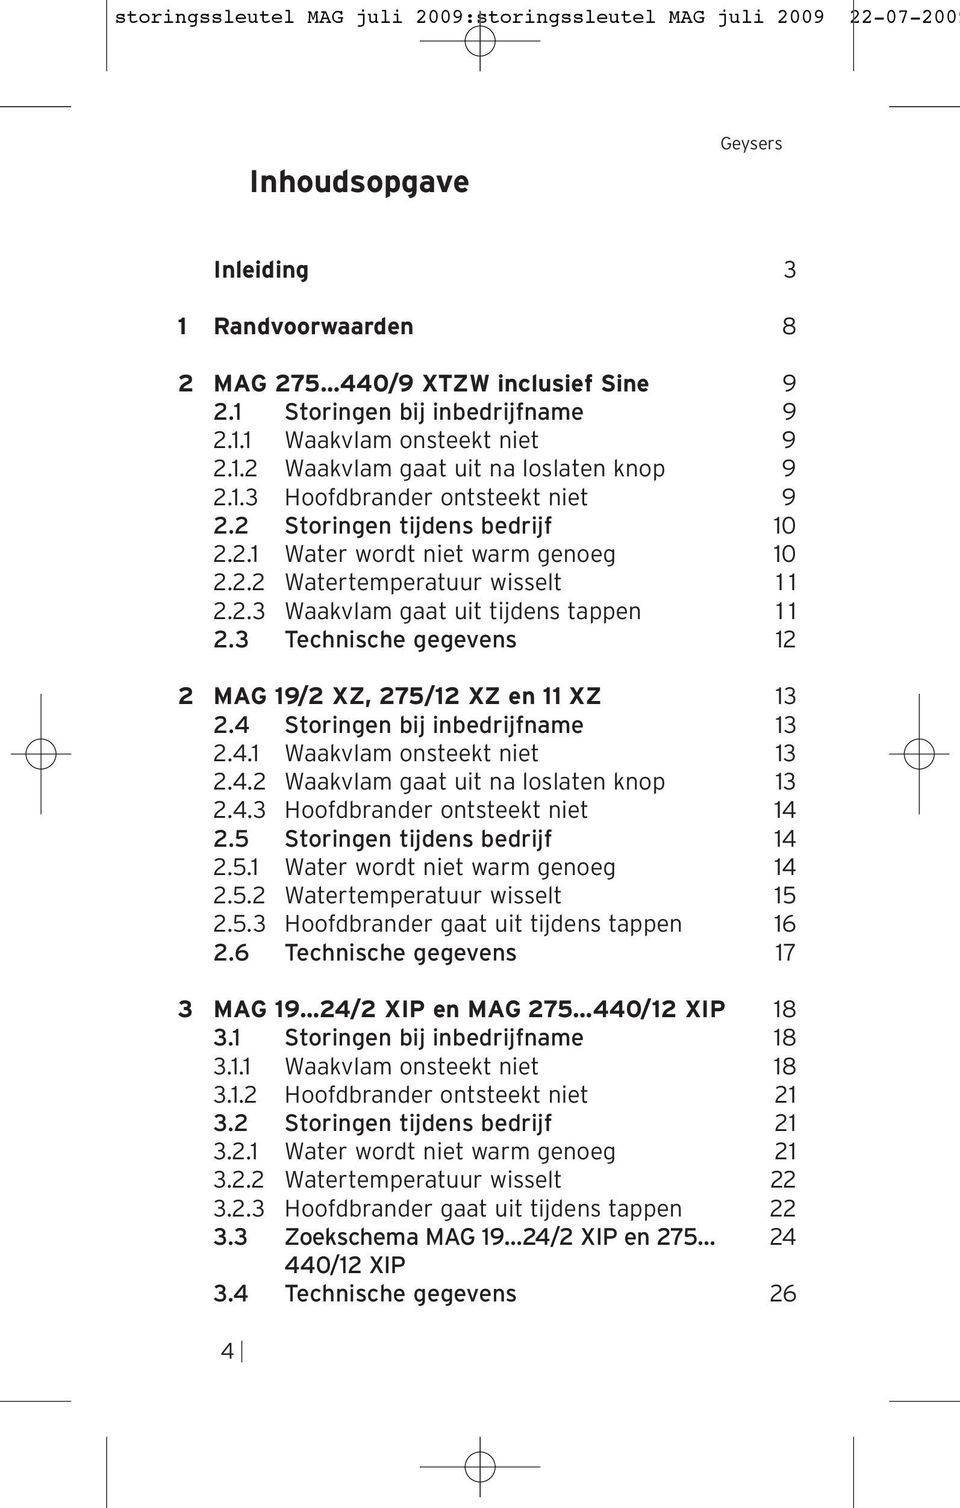 3 Technische gegevens 12 2 MAG 19/2 XZ, 275/12 XZ en 11 XZ 13 2.4 Storingen bij inbedrijfname 13 2.4.1 Waakvlam onsteekt niet 13 2.4.2 Waakvlam gaat uit na loslaten knop 13 2.4.3 Hoofdbrander ontsteekt niet 14 2.